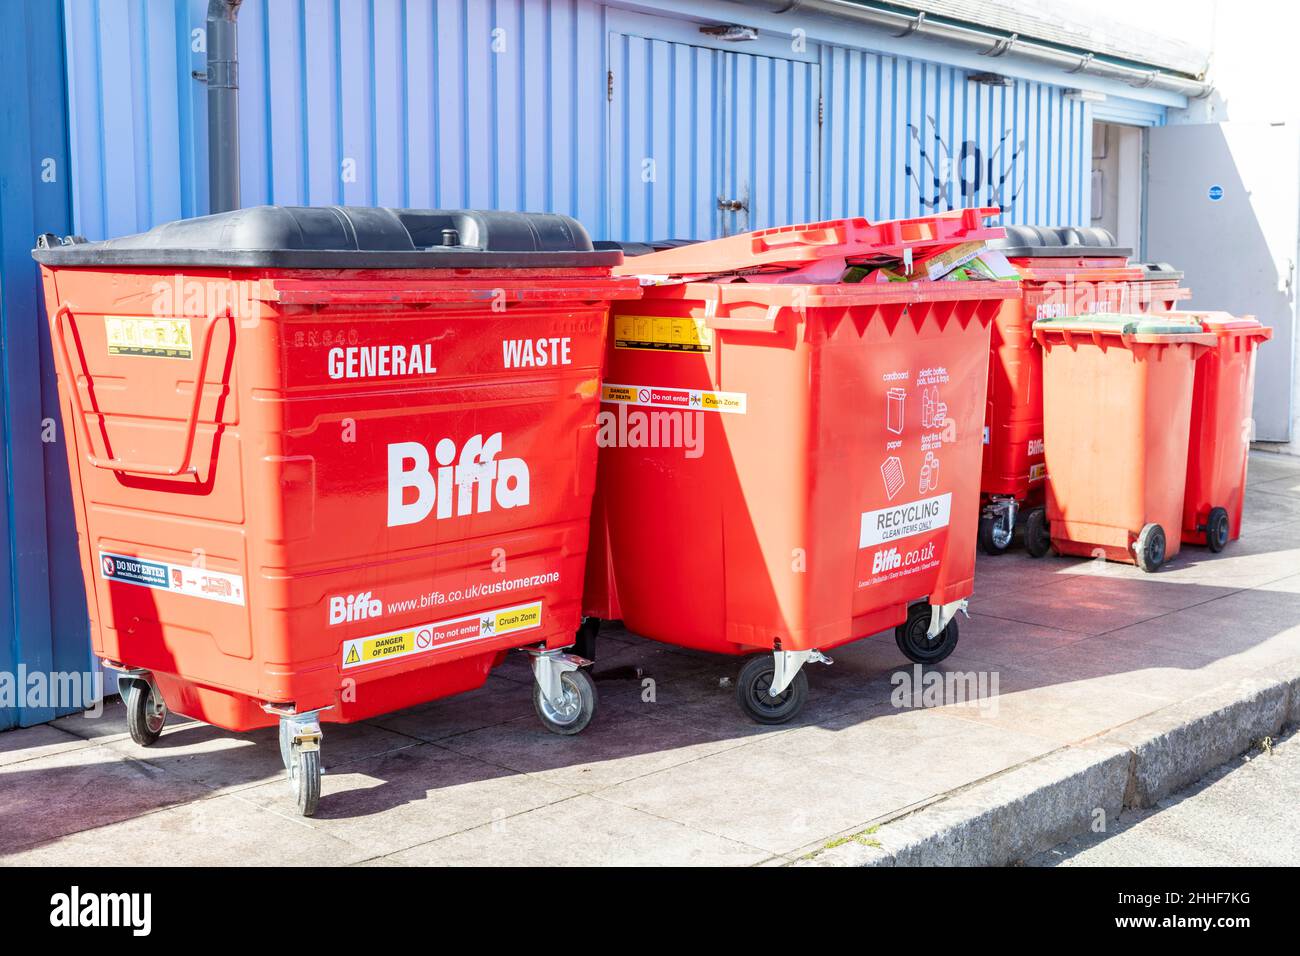 Biffa waste disposal bins, Biffa bins, Biffa bin, Biffa waste bins, waste bins, Biffa, Biffa recycling bin, general waste, recycling, bin, bins, biffa Stock Photo